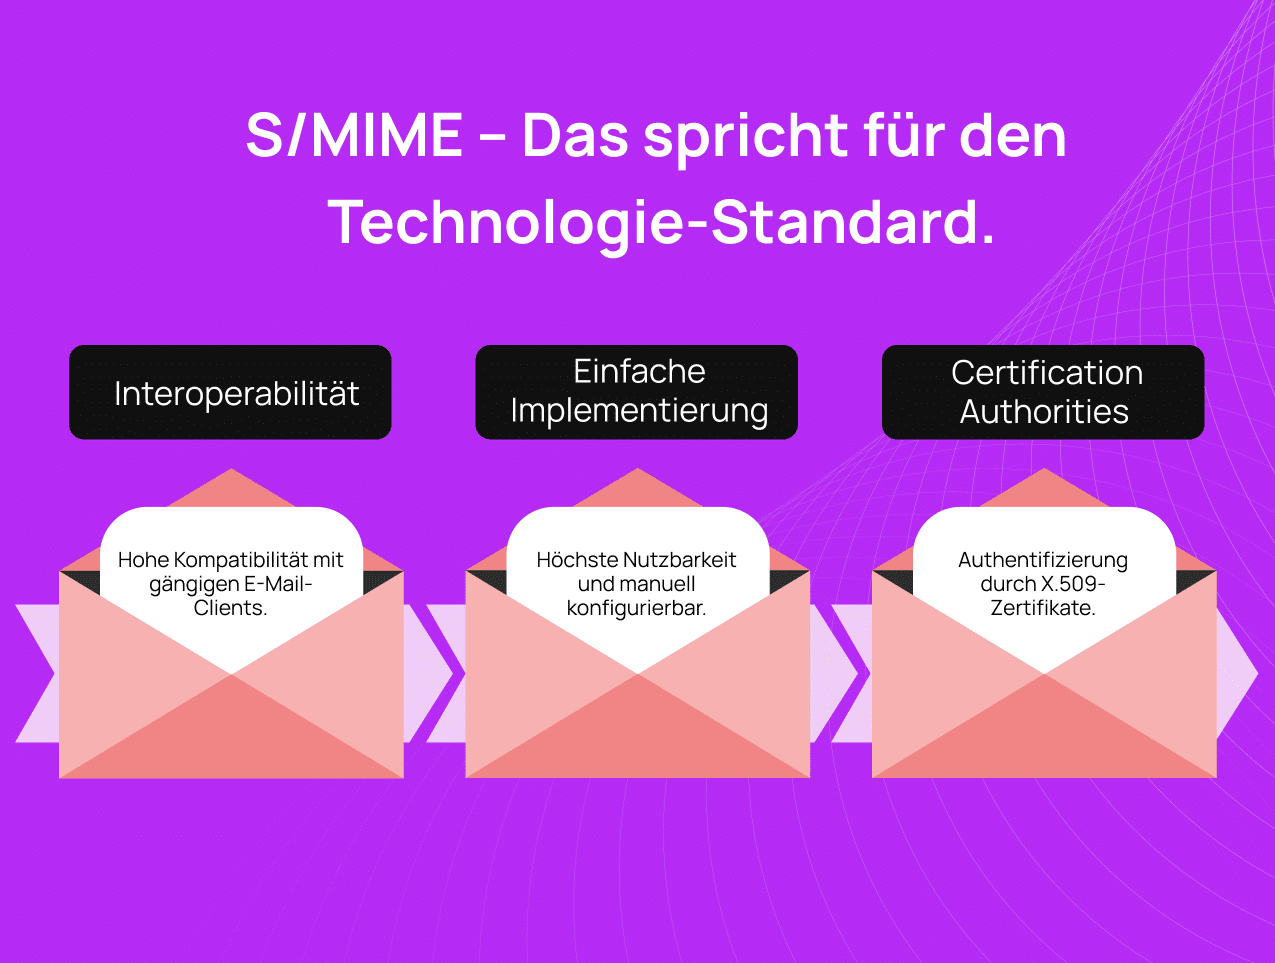 Die Infografik zeigt S/MIME und die Benefits Interoperabilität, einfache Implementierung und CAs abgebildet auf drei Briefen vor lila Hintergrund.